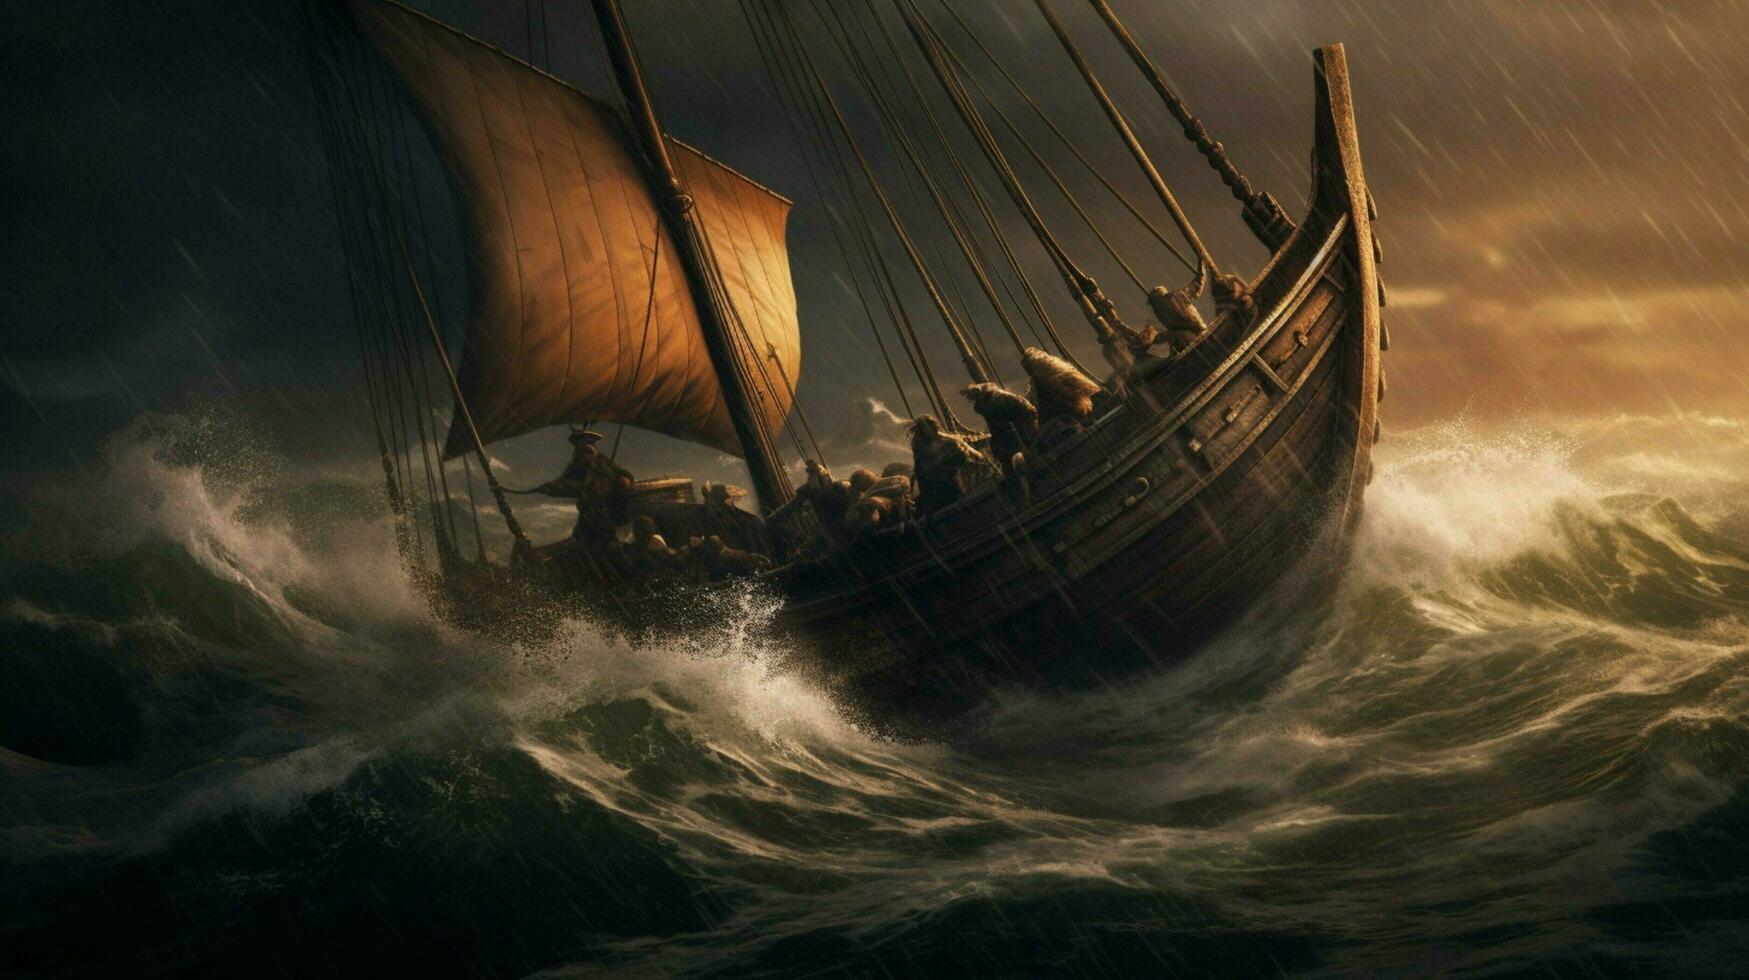 stormachtig oceaan met viking schip vechten golven foto